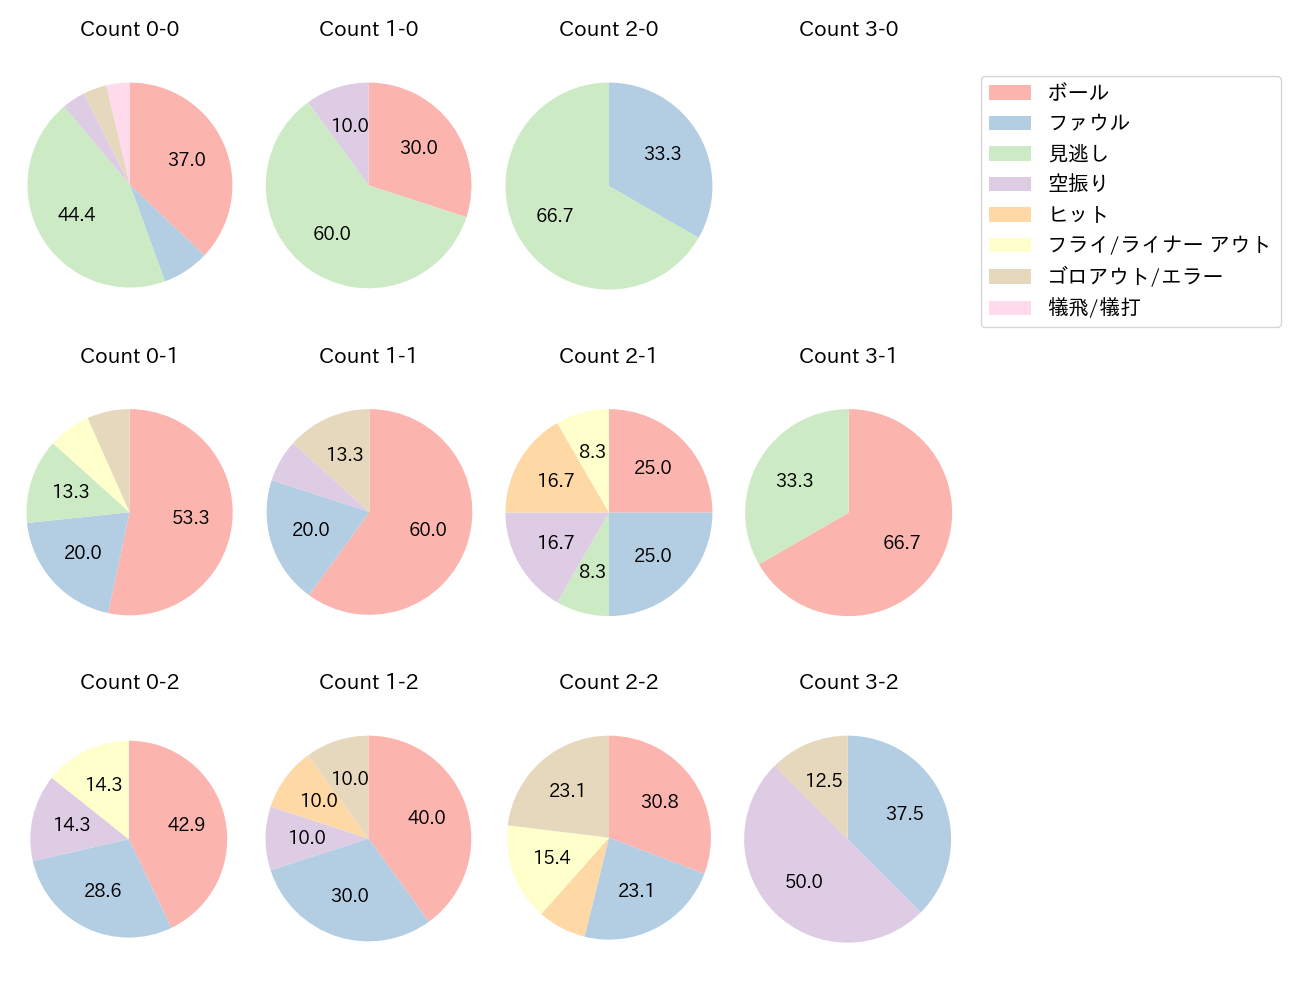 佐藤 都志也の球数分布(2021年6月)